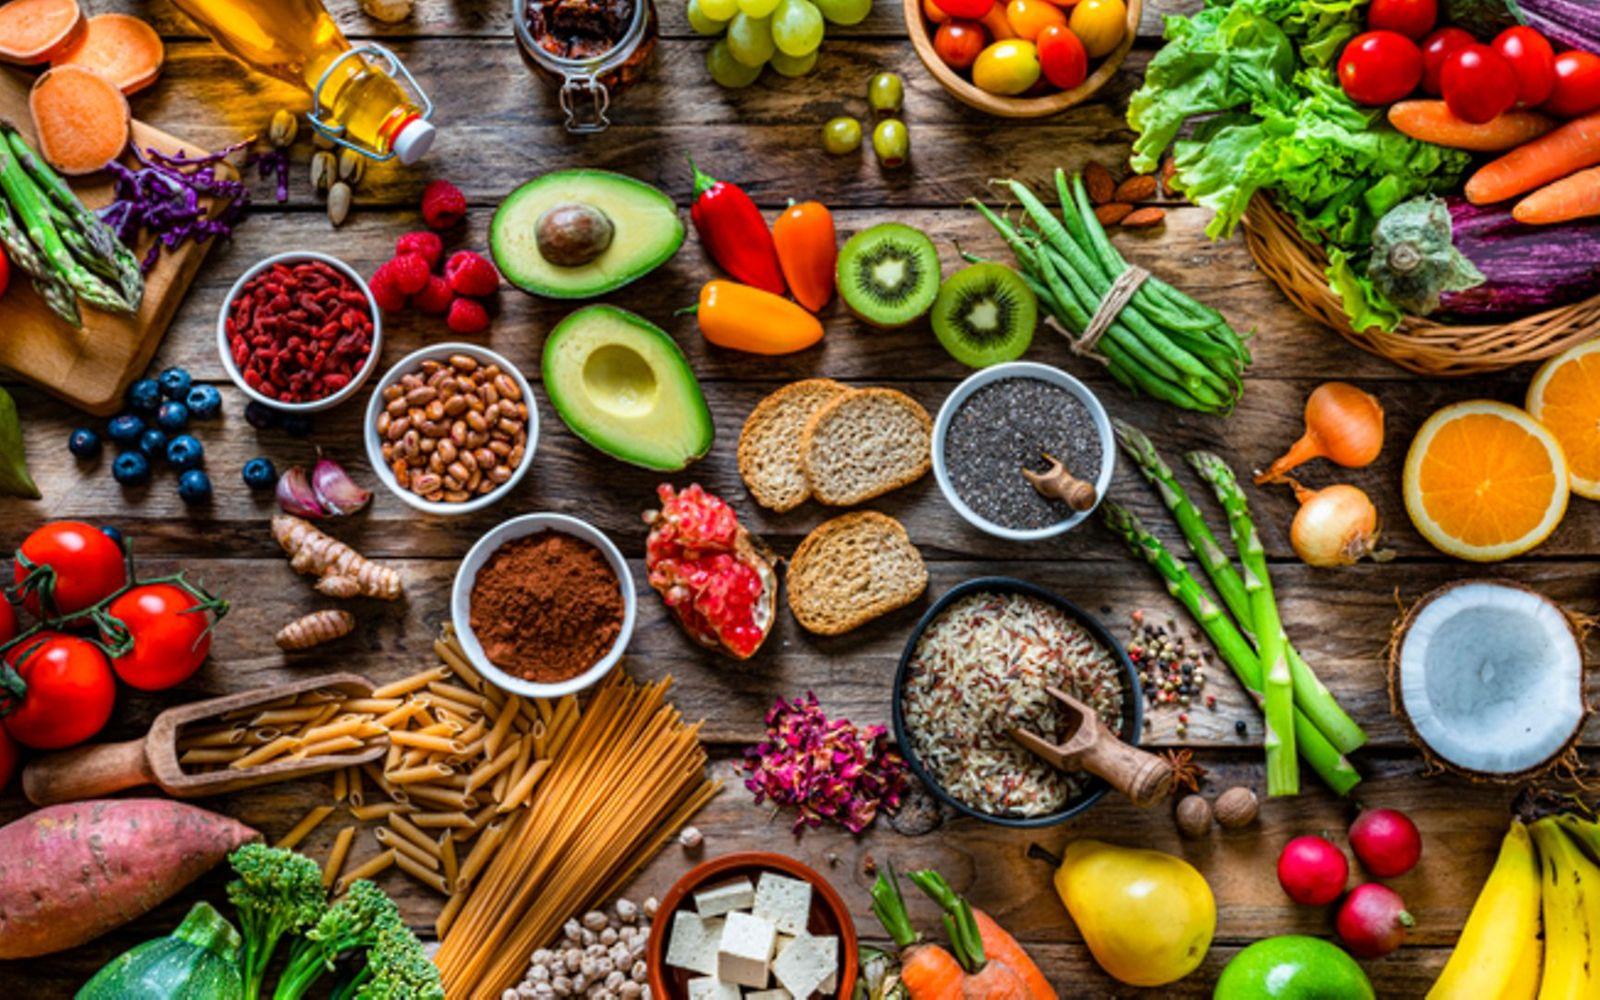 Vitamine: Tisch voll bunter, frischer Lebensmittel wie Kiwis, Himbeeren, Orangen